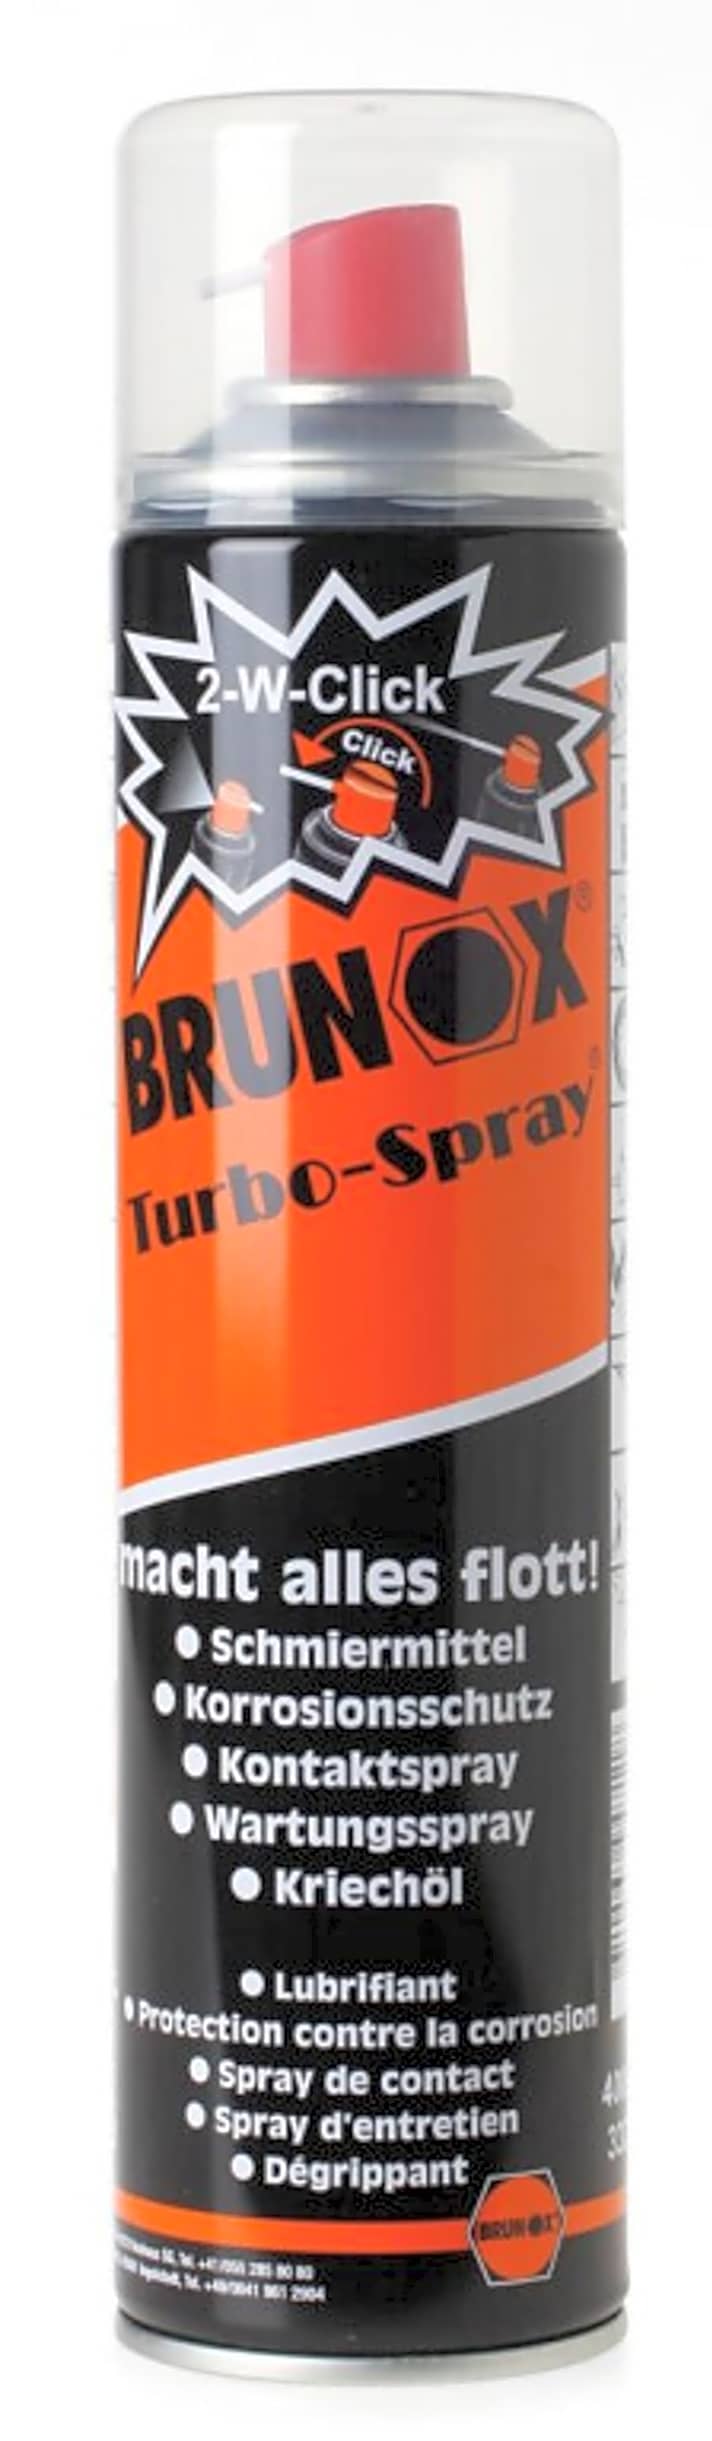   Das Turbo-Spray von Brunox kann man vor einer Fahrt im Matsch verwenden.